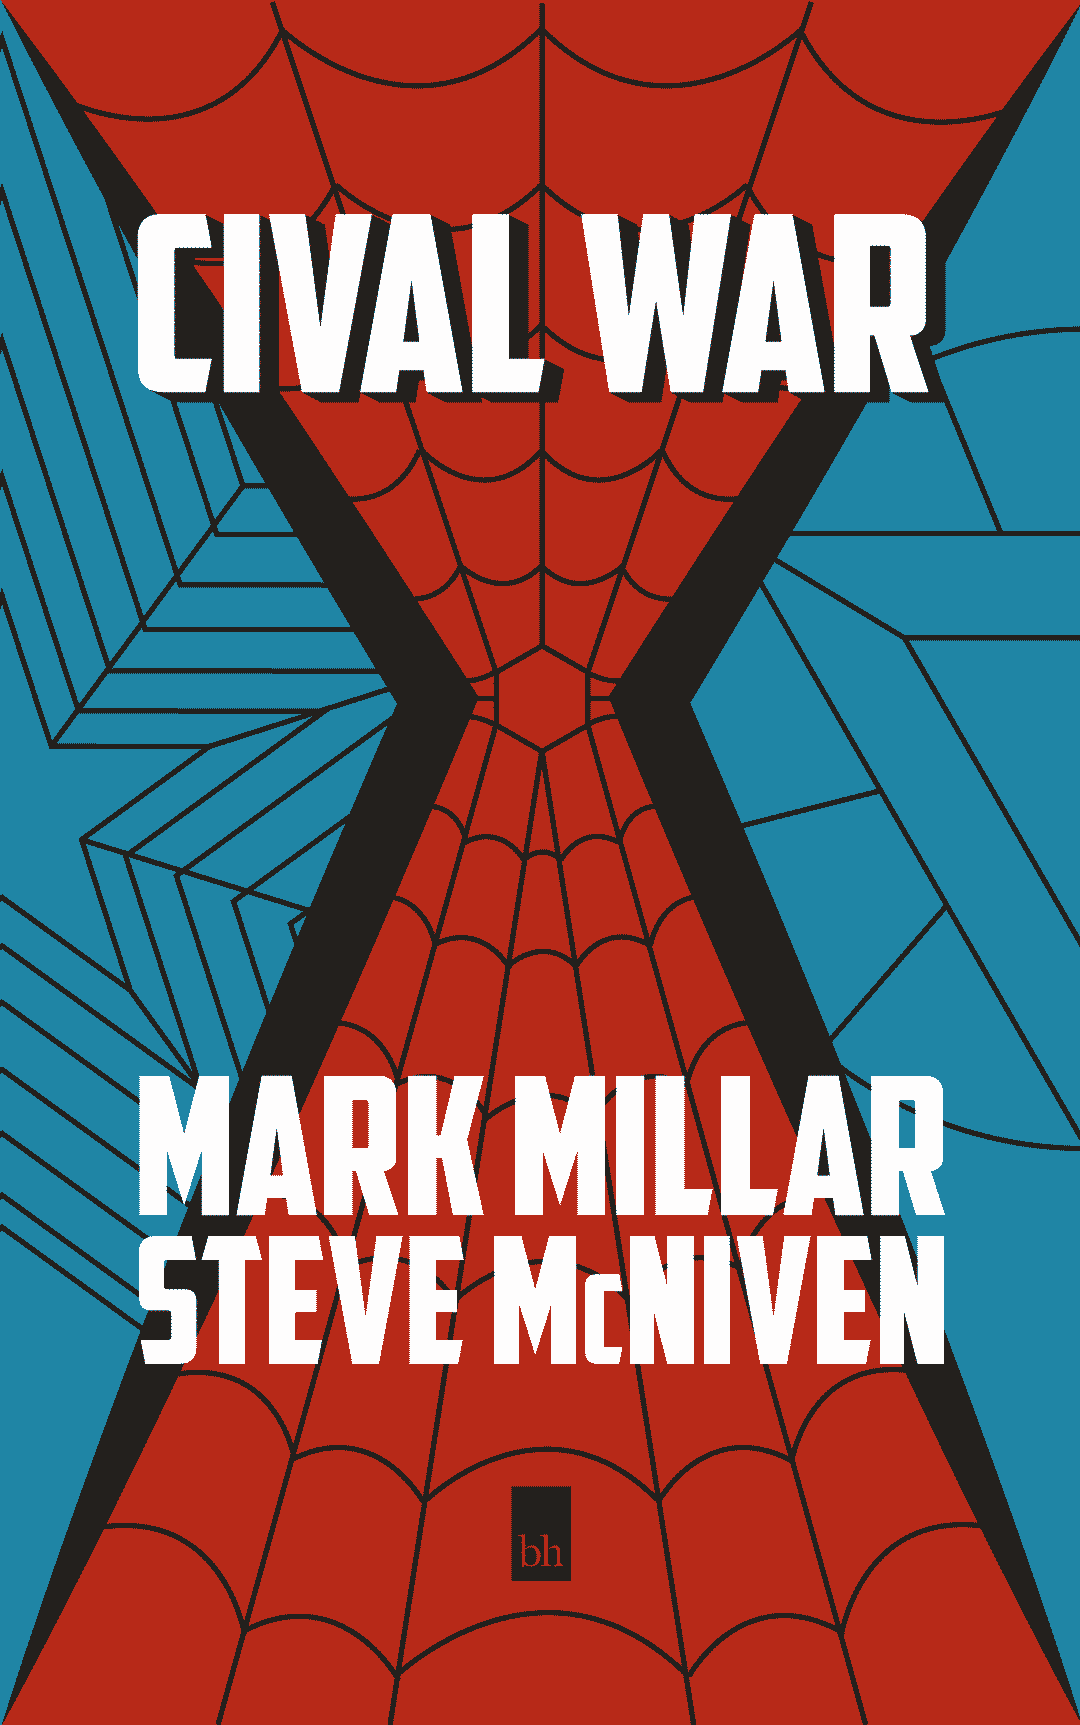 Marvel: Civil War by Mark Millar